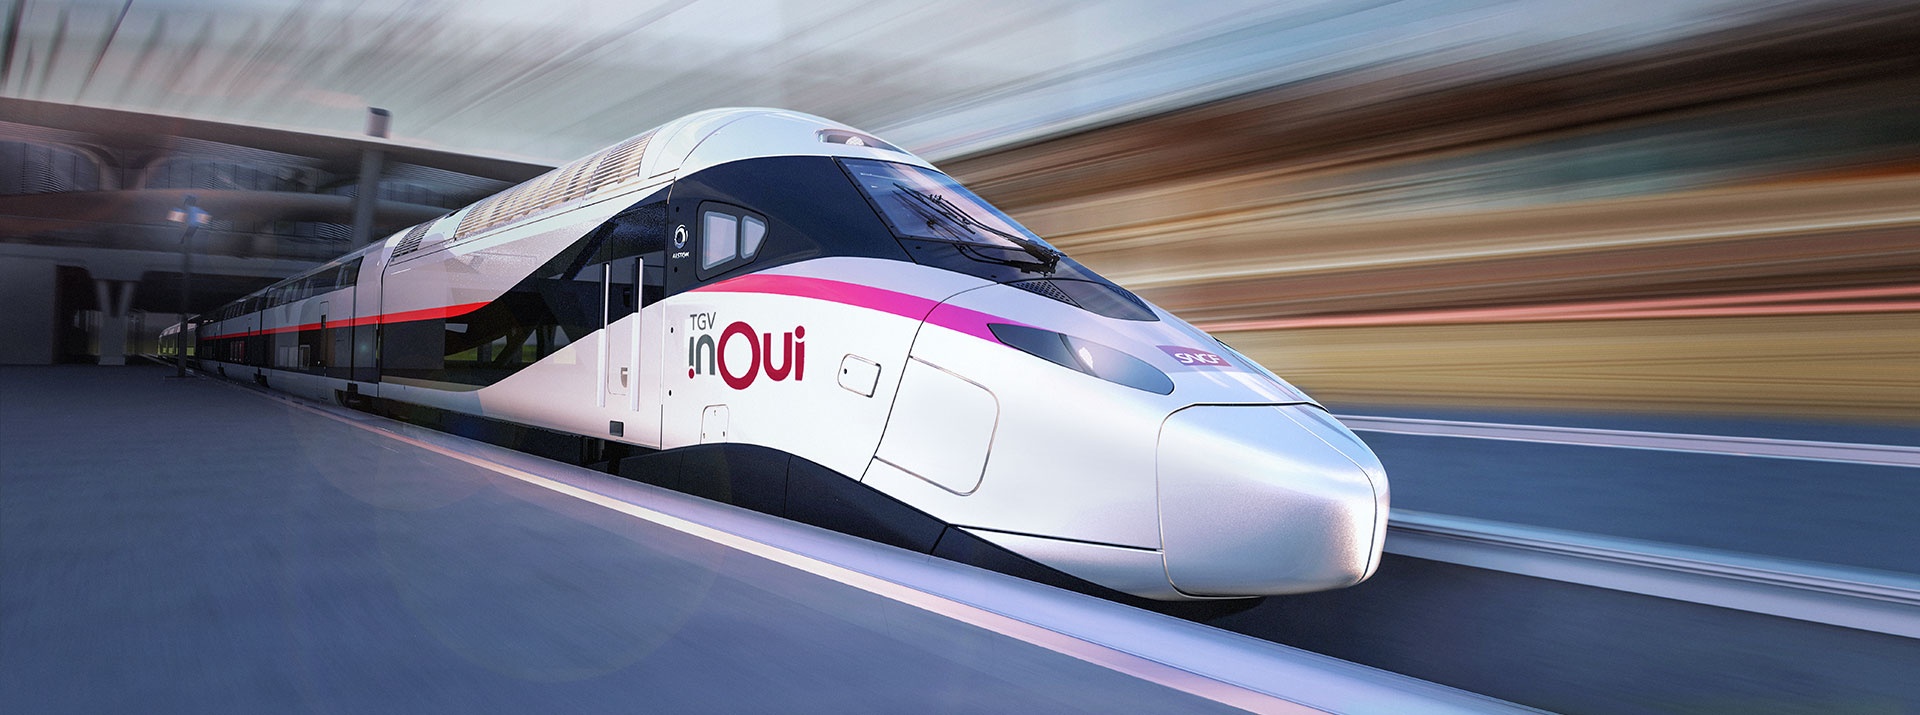 97 %: Der TGV der Zukunft. | Knorr-Bremse Group